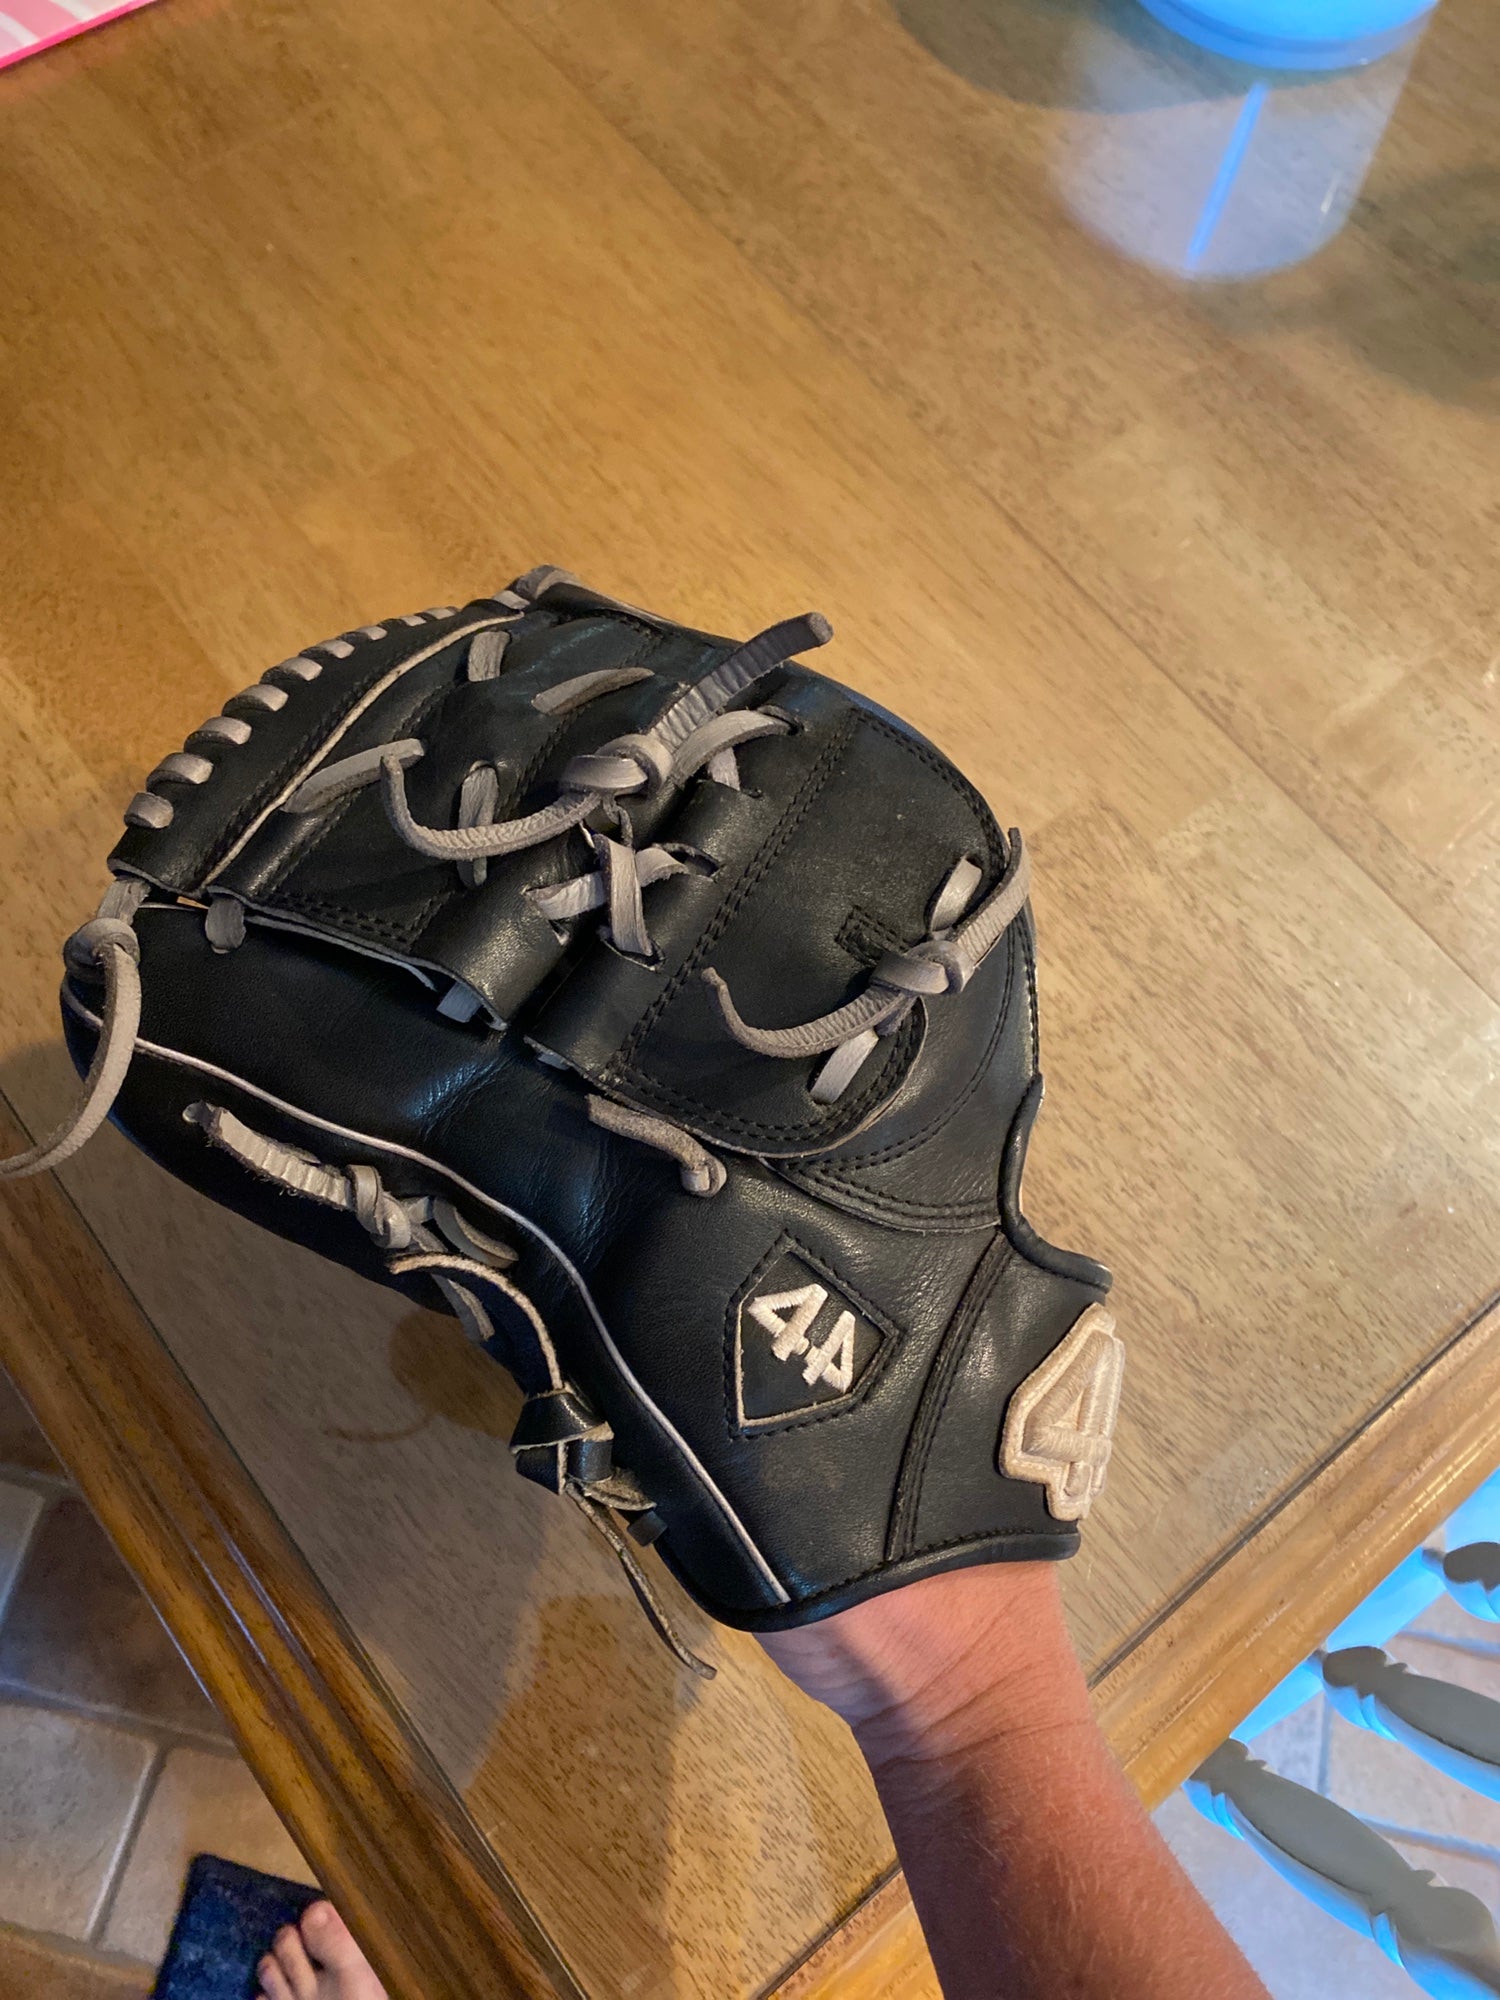 44 left handed baseball glove